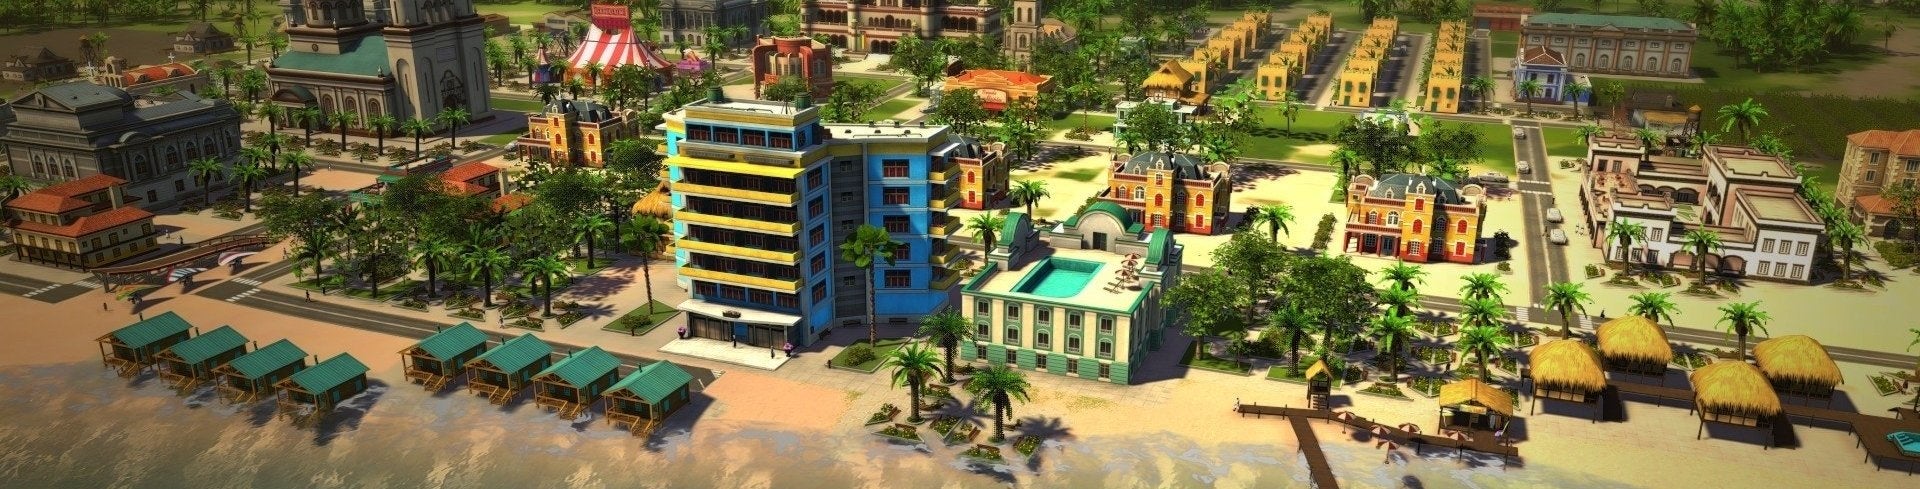 Bilder zu Tropico 5 - Test